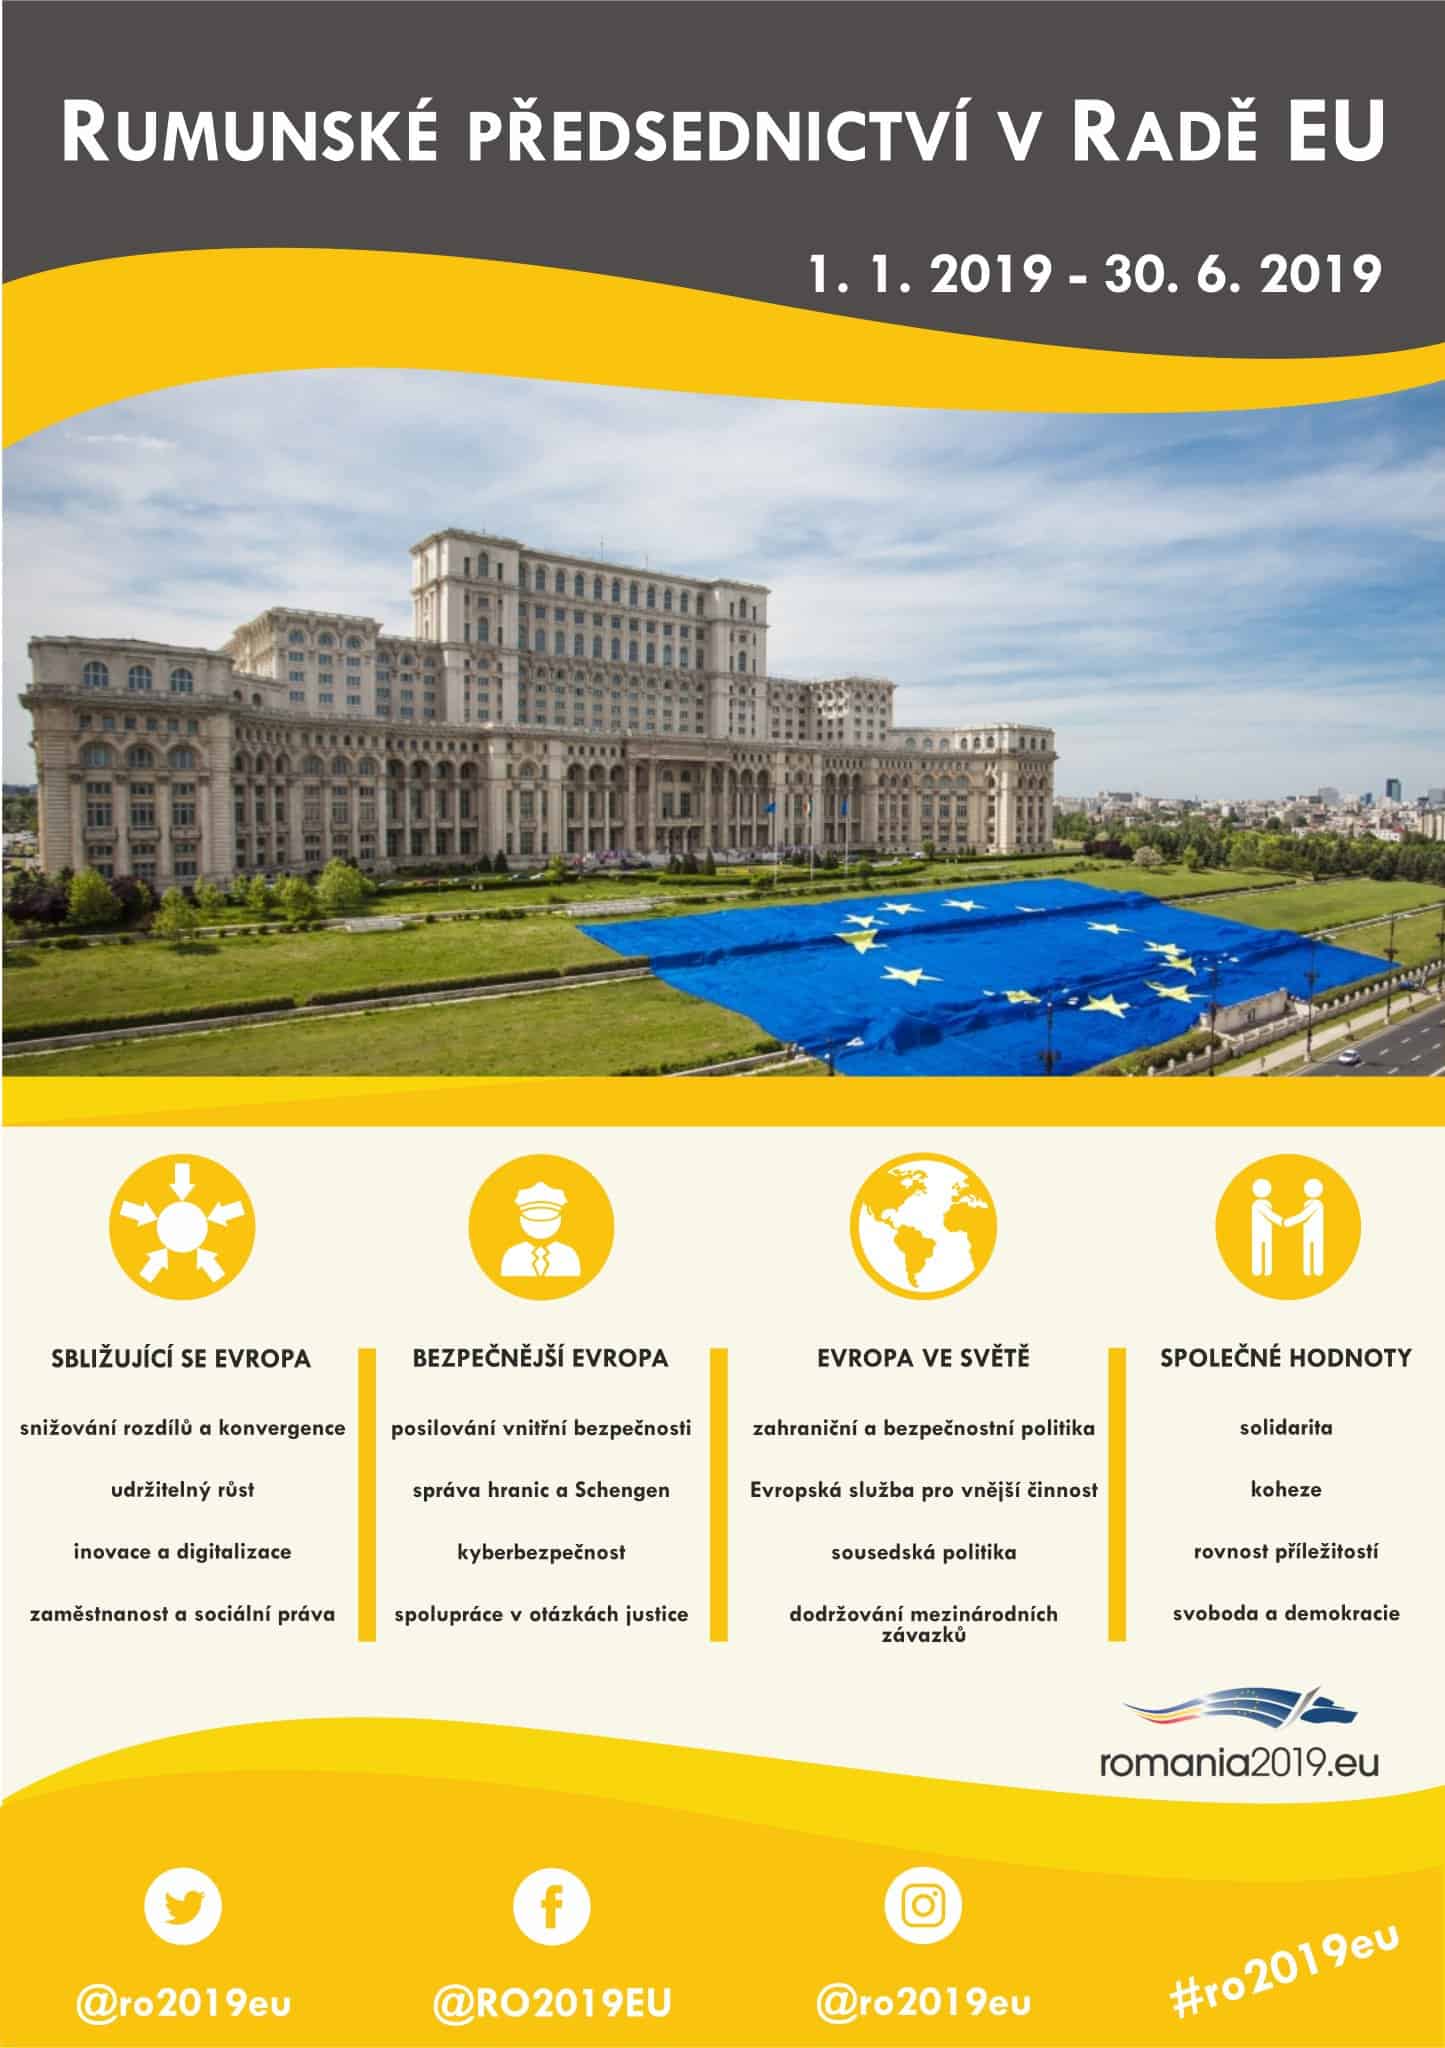 Priority rumunského předsednictví v Radě EU